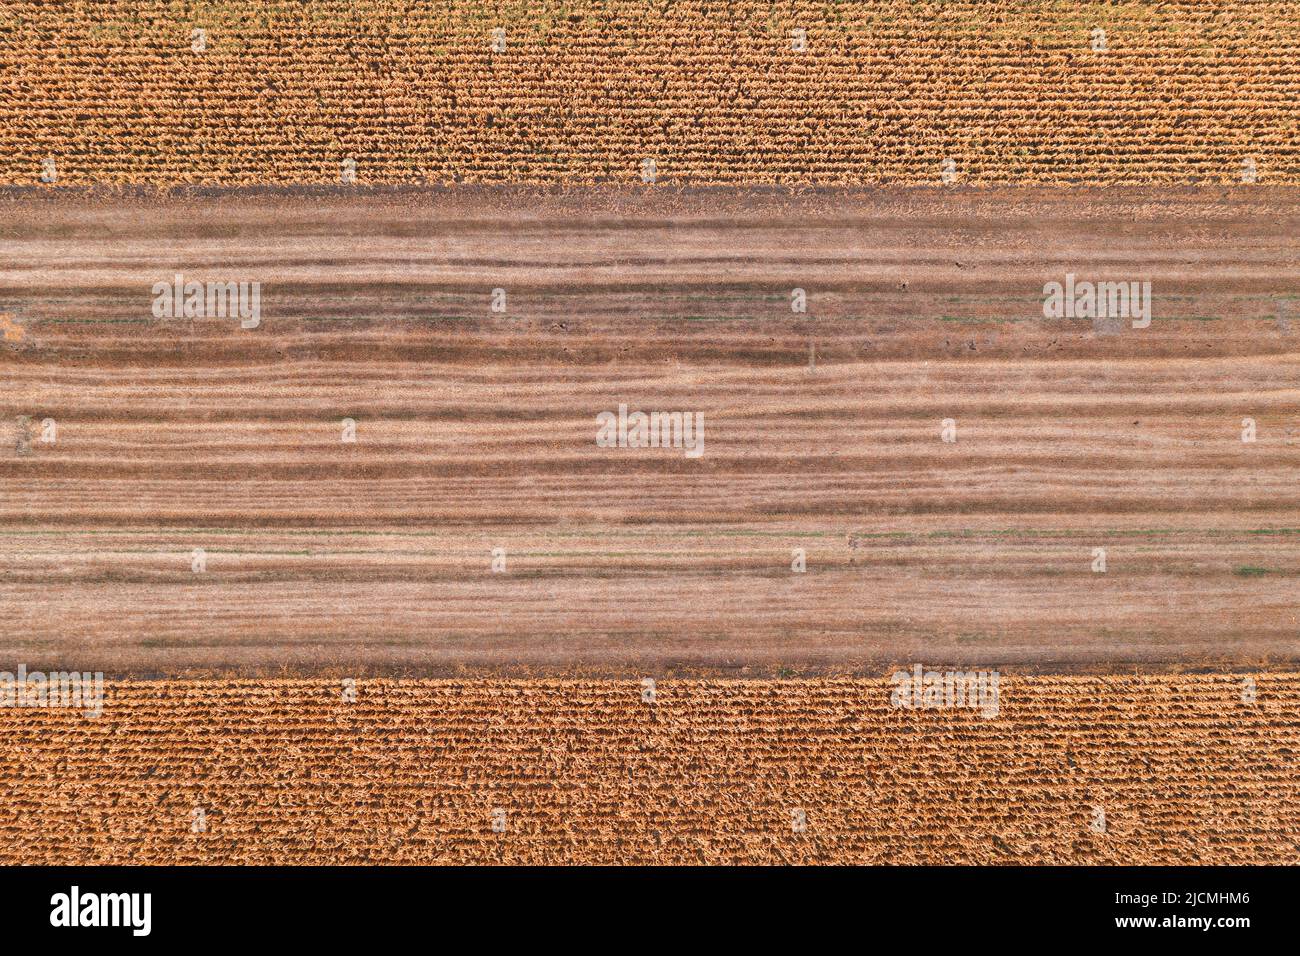 Campo di stoppie del grano dopo la mietitura, drone vista ad angolo alto pov in basso Foto Stock